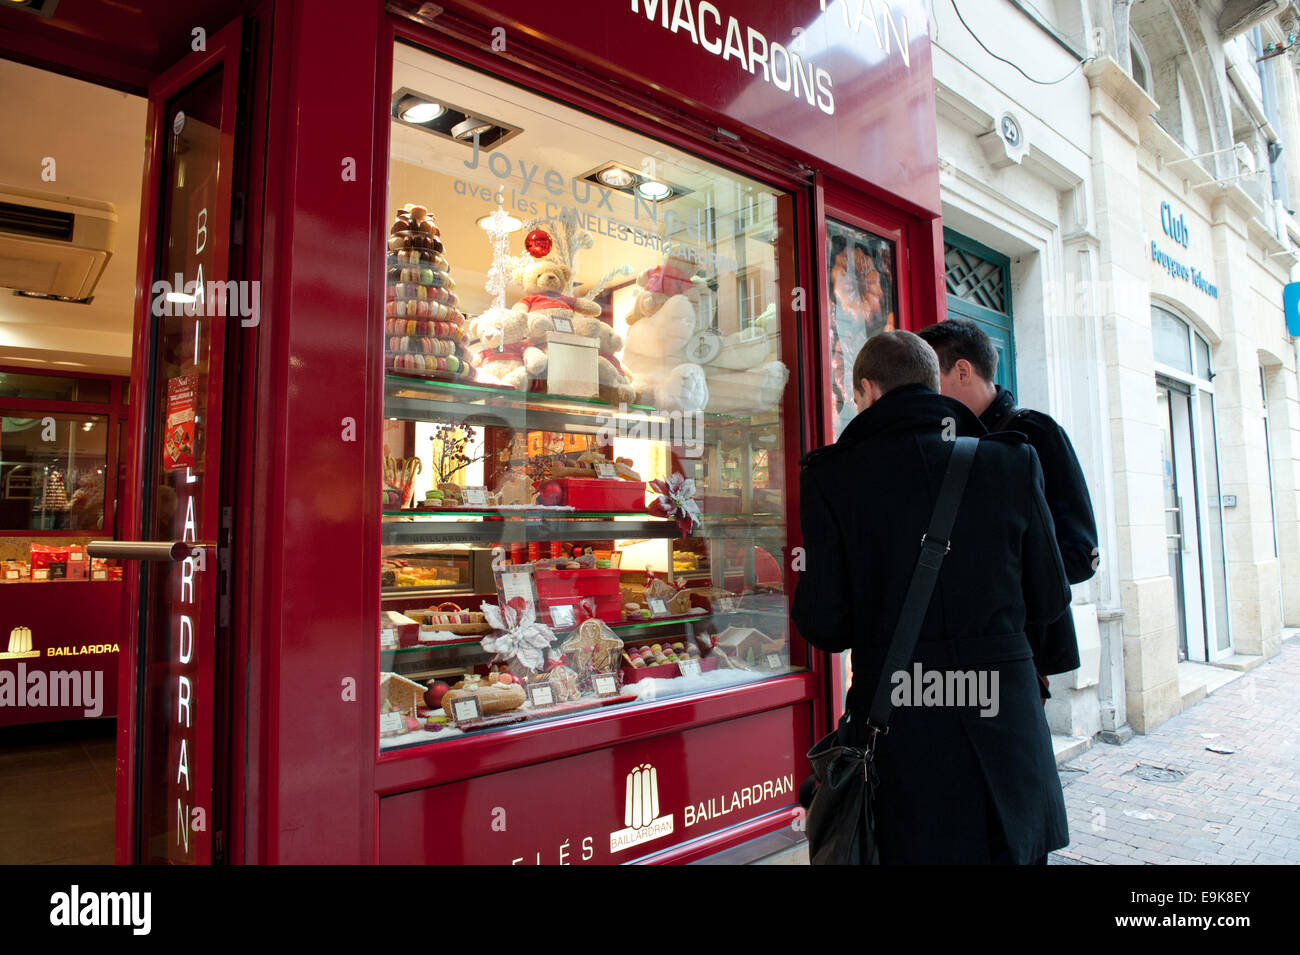 Schönes Geschäft Baillardran auf 29 rue Porte Dijeaux, Bordeaux, Frankreich Stockfoto